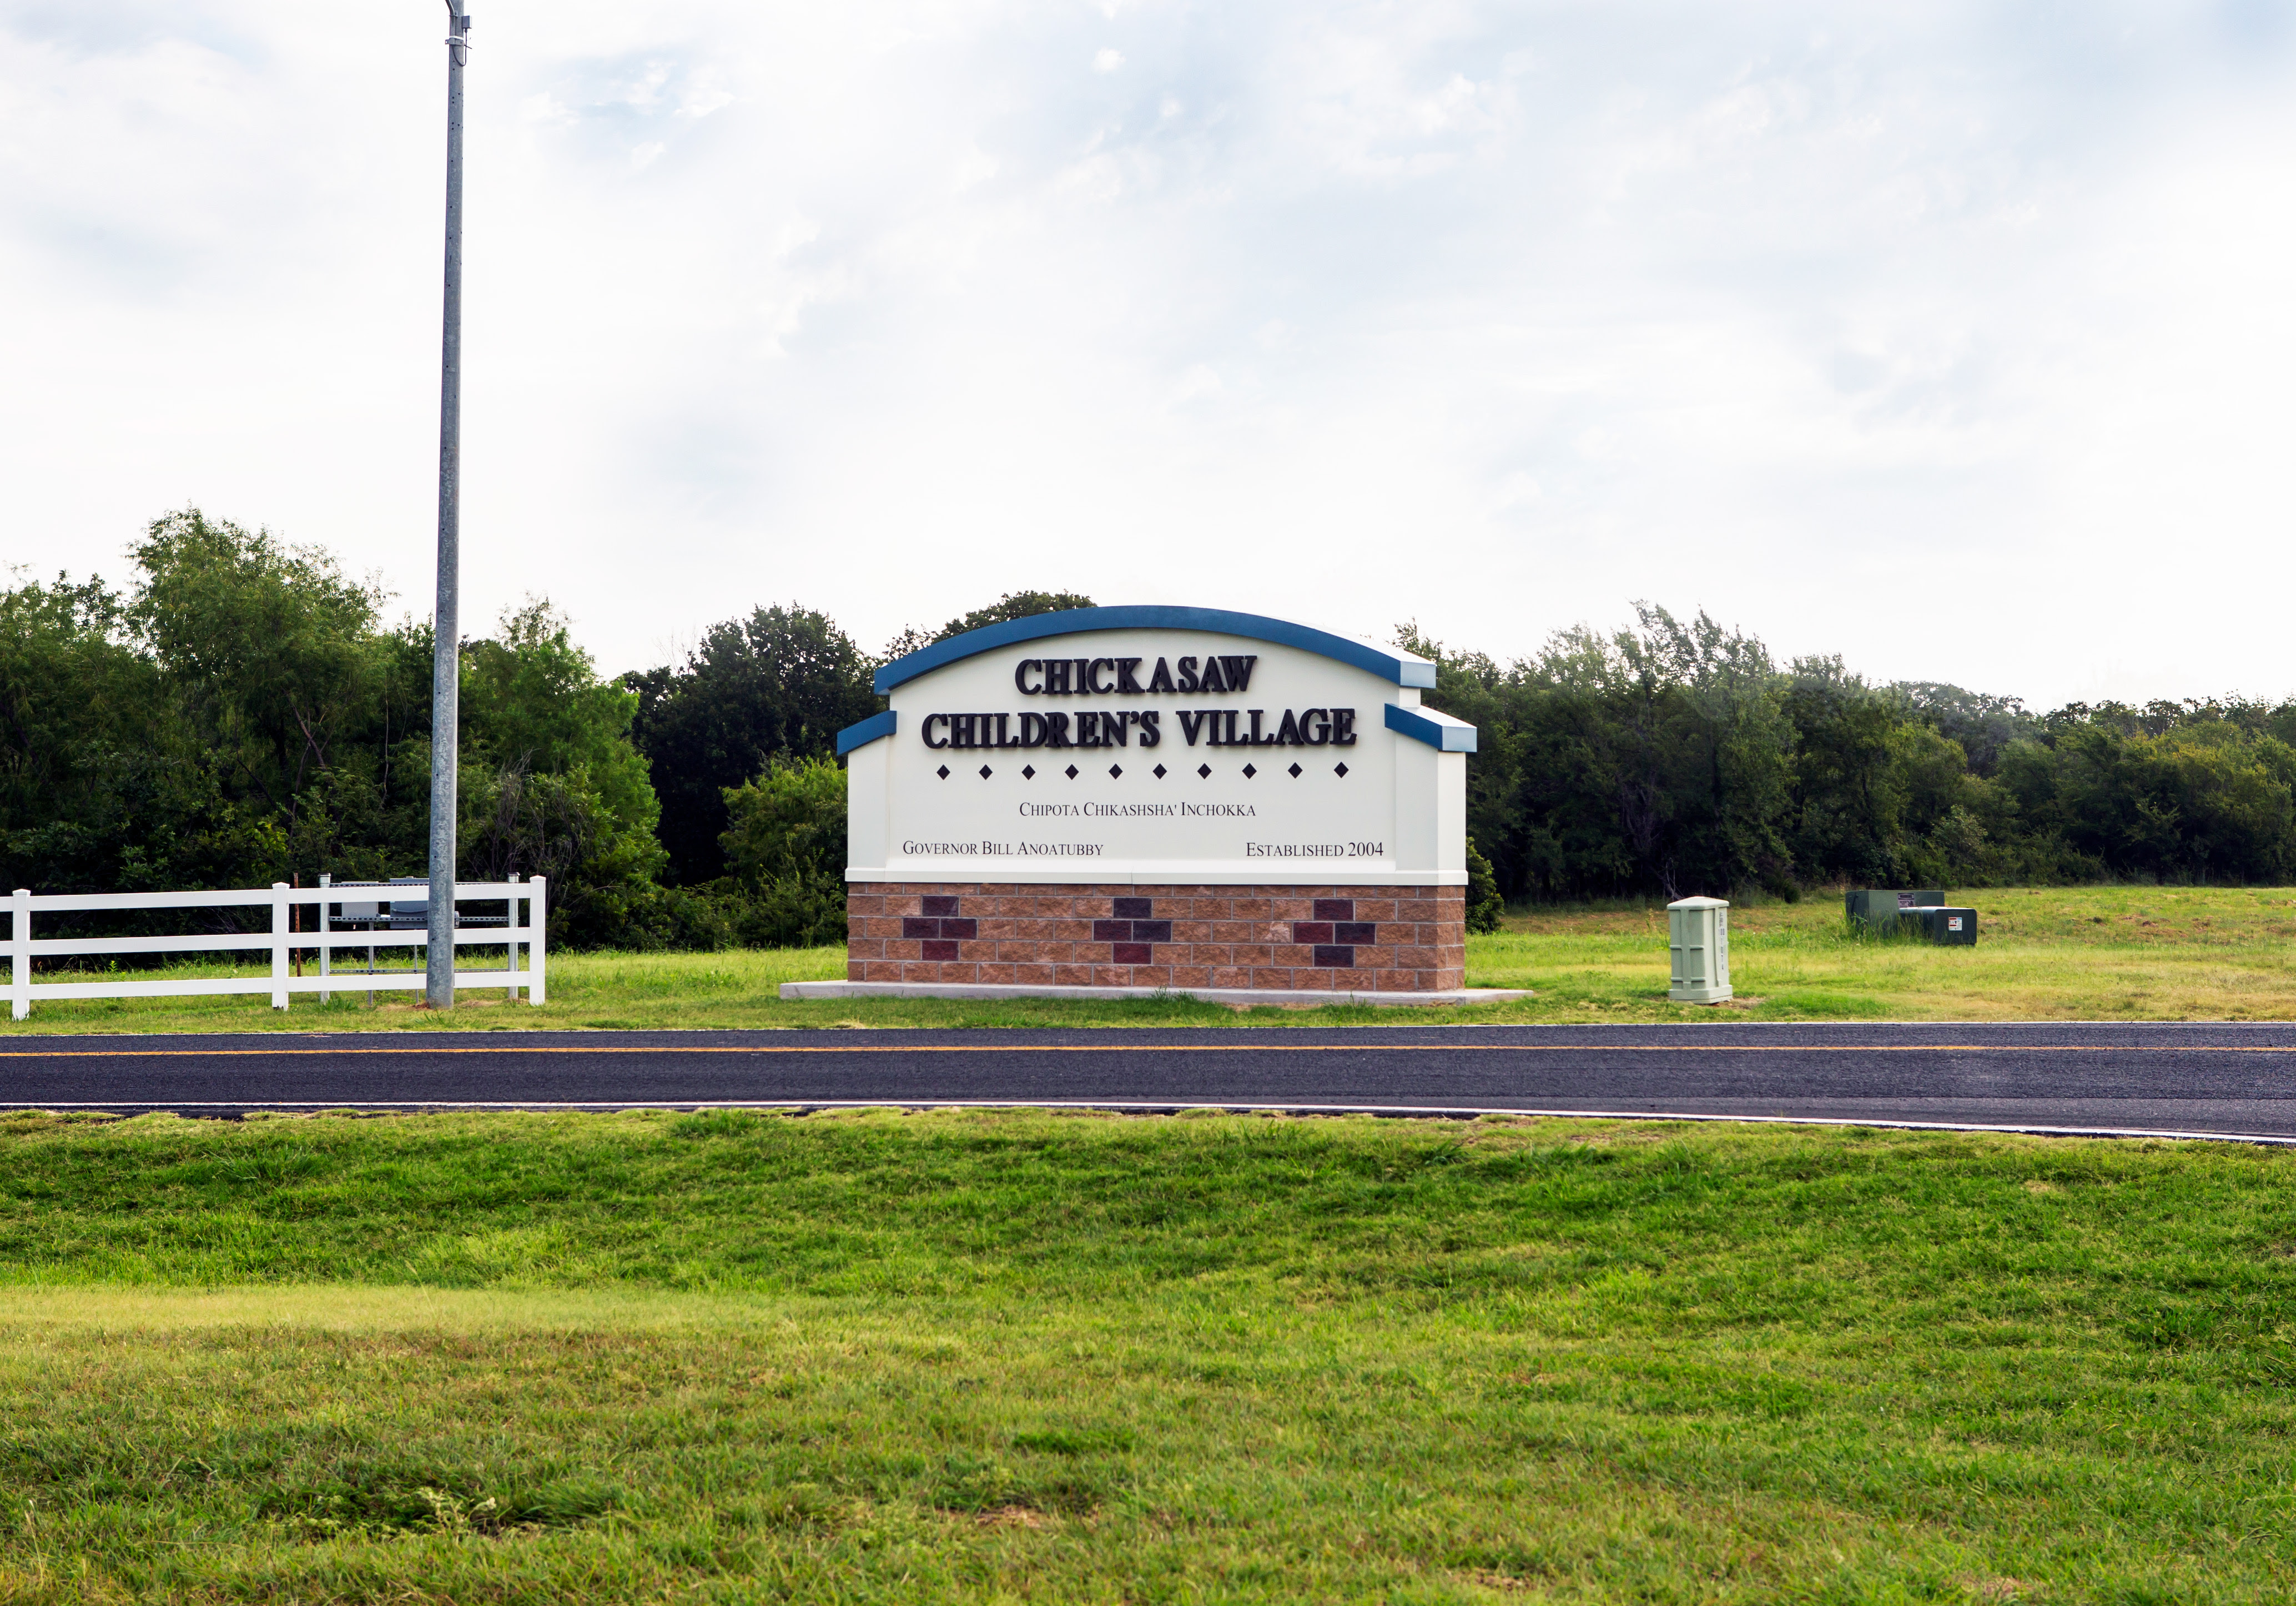 Chickasaw Children’s Village Celebrates 20 Years of Nurturing First American Students